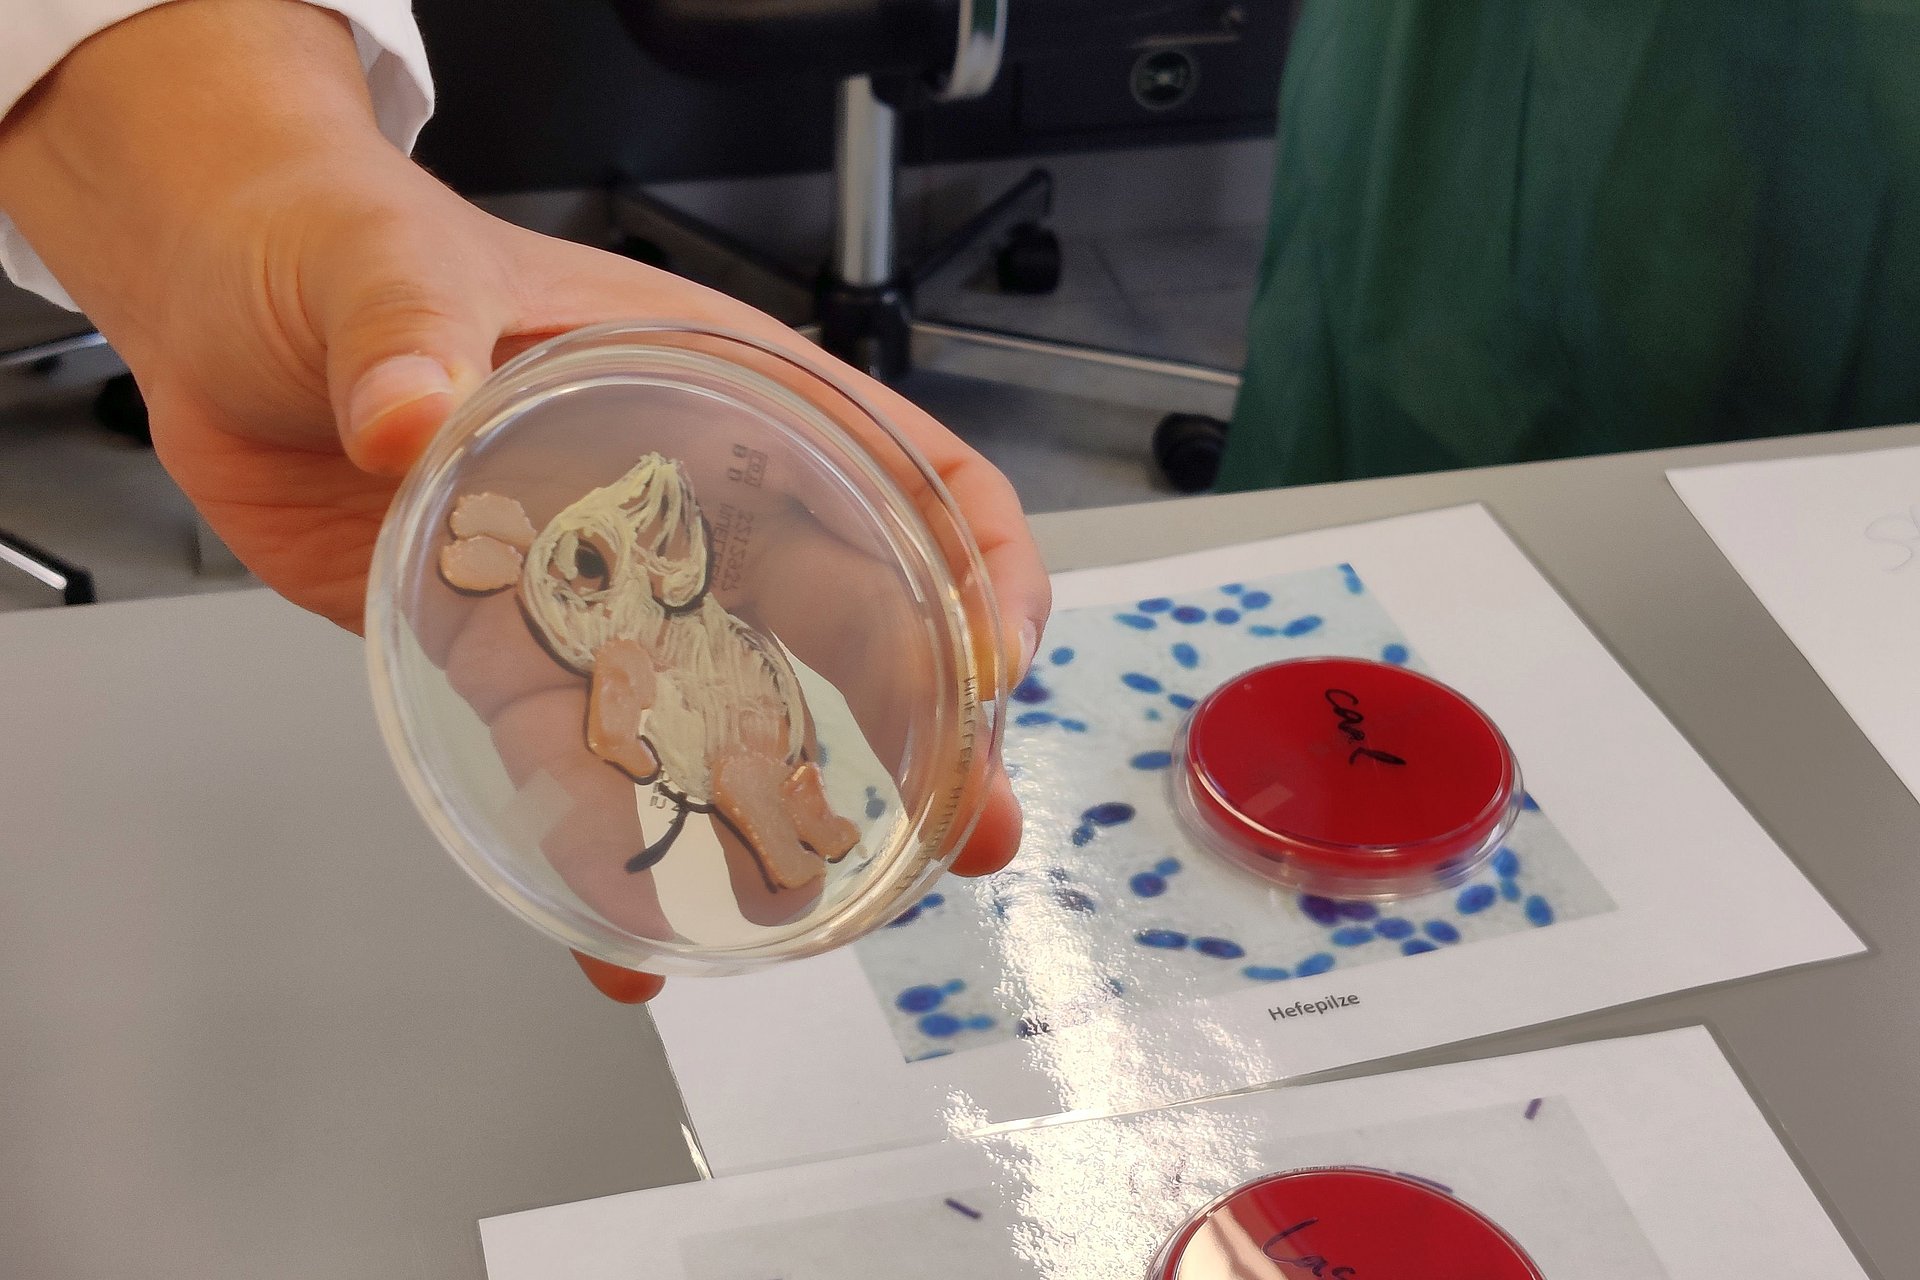 Am Institut für Medizinische Mikrobiologie, Immunologie und Hygiene hält eine Hand eine Petrischale mit einer Bakterienkultur, die in Form der Maus aus der "Sendung mit der Maus" gewachsen ist.